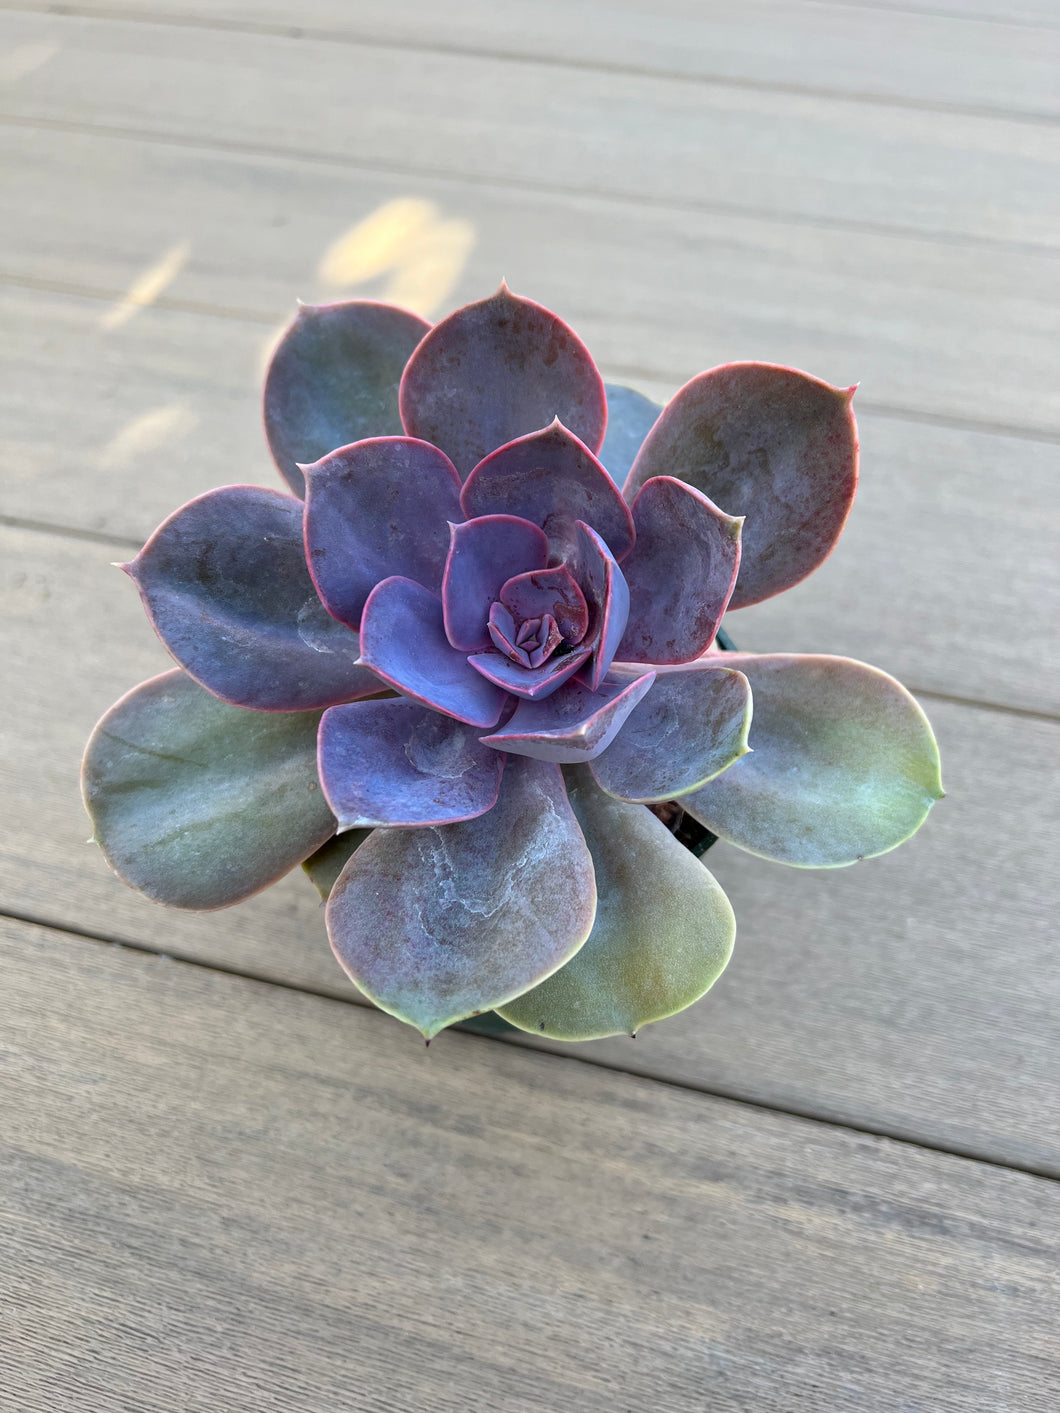 Echeveria ‘Perle von Nurnberg’ Succulent 4”